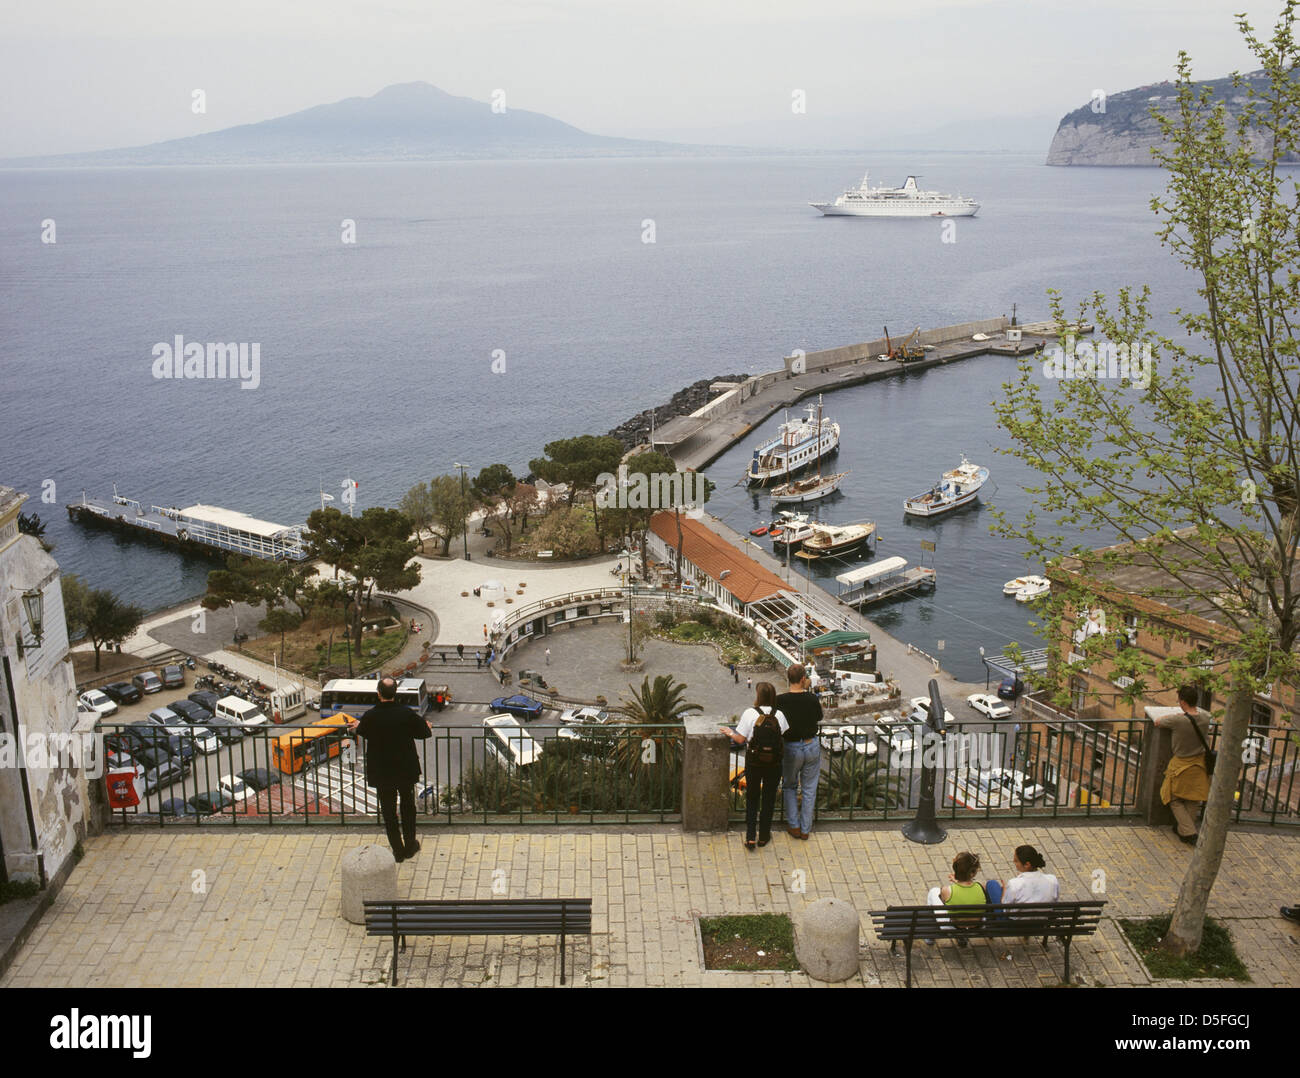 Italia Campania Sorrento Marina Piccola Porto vista desde el club de extranjeros Foto de stock